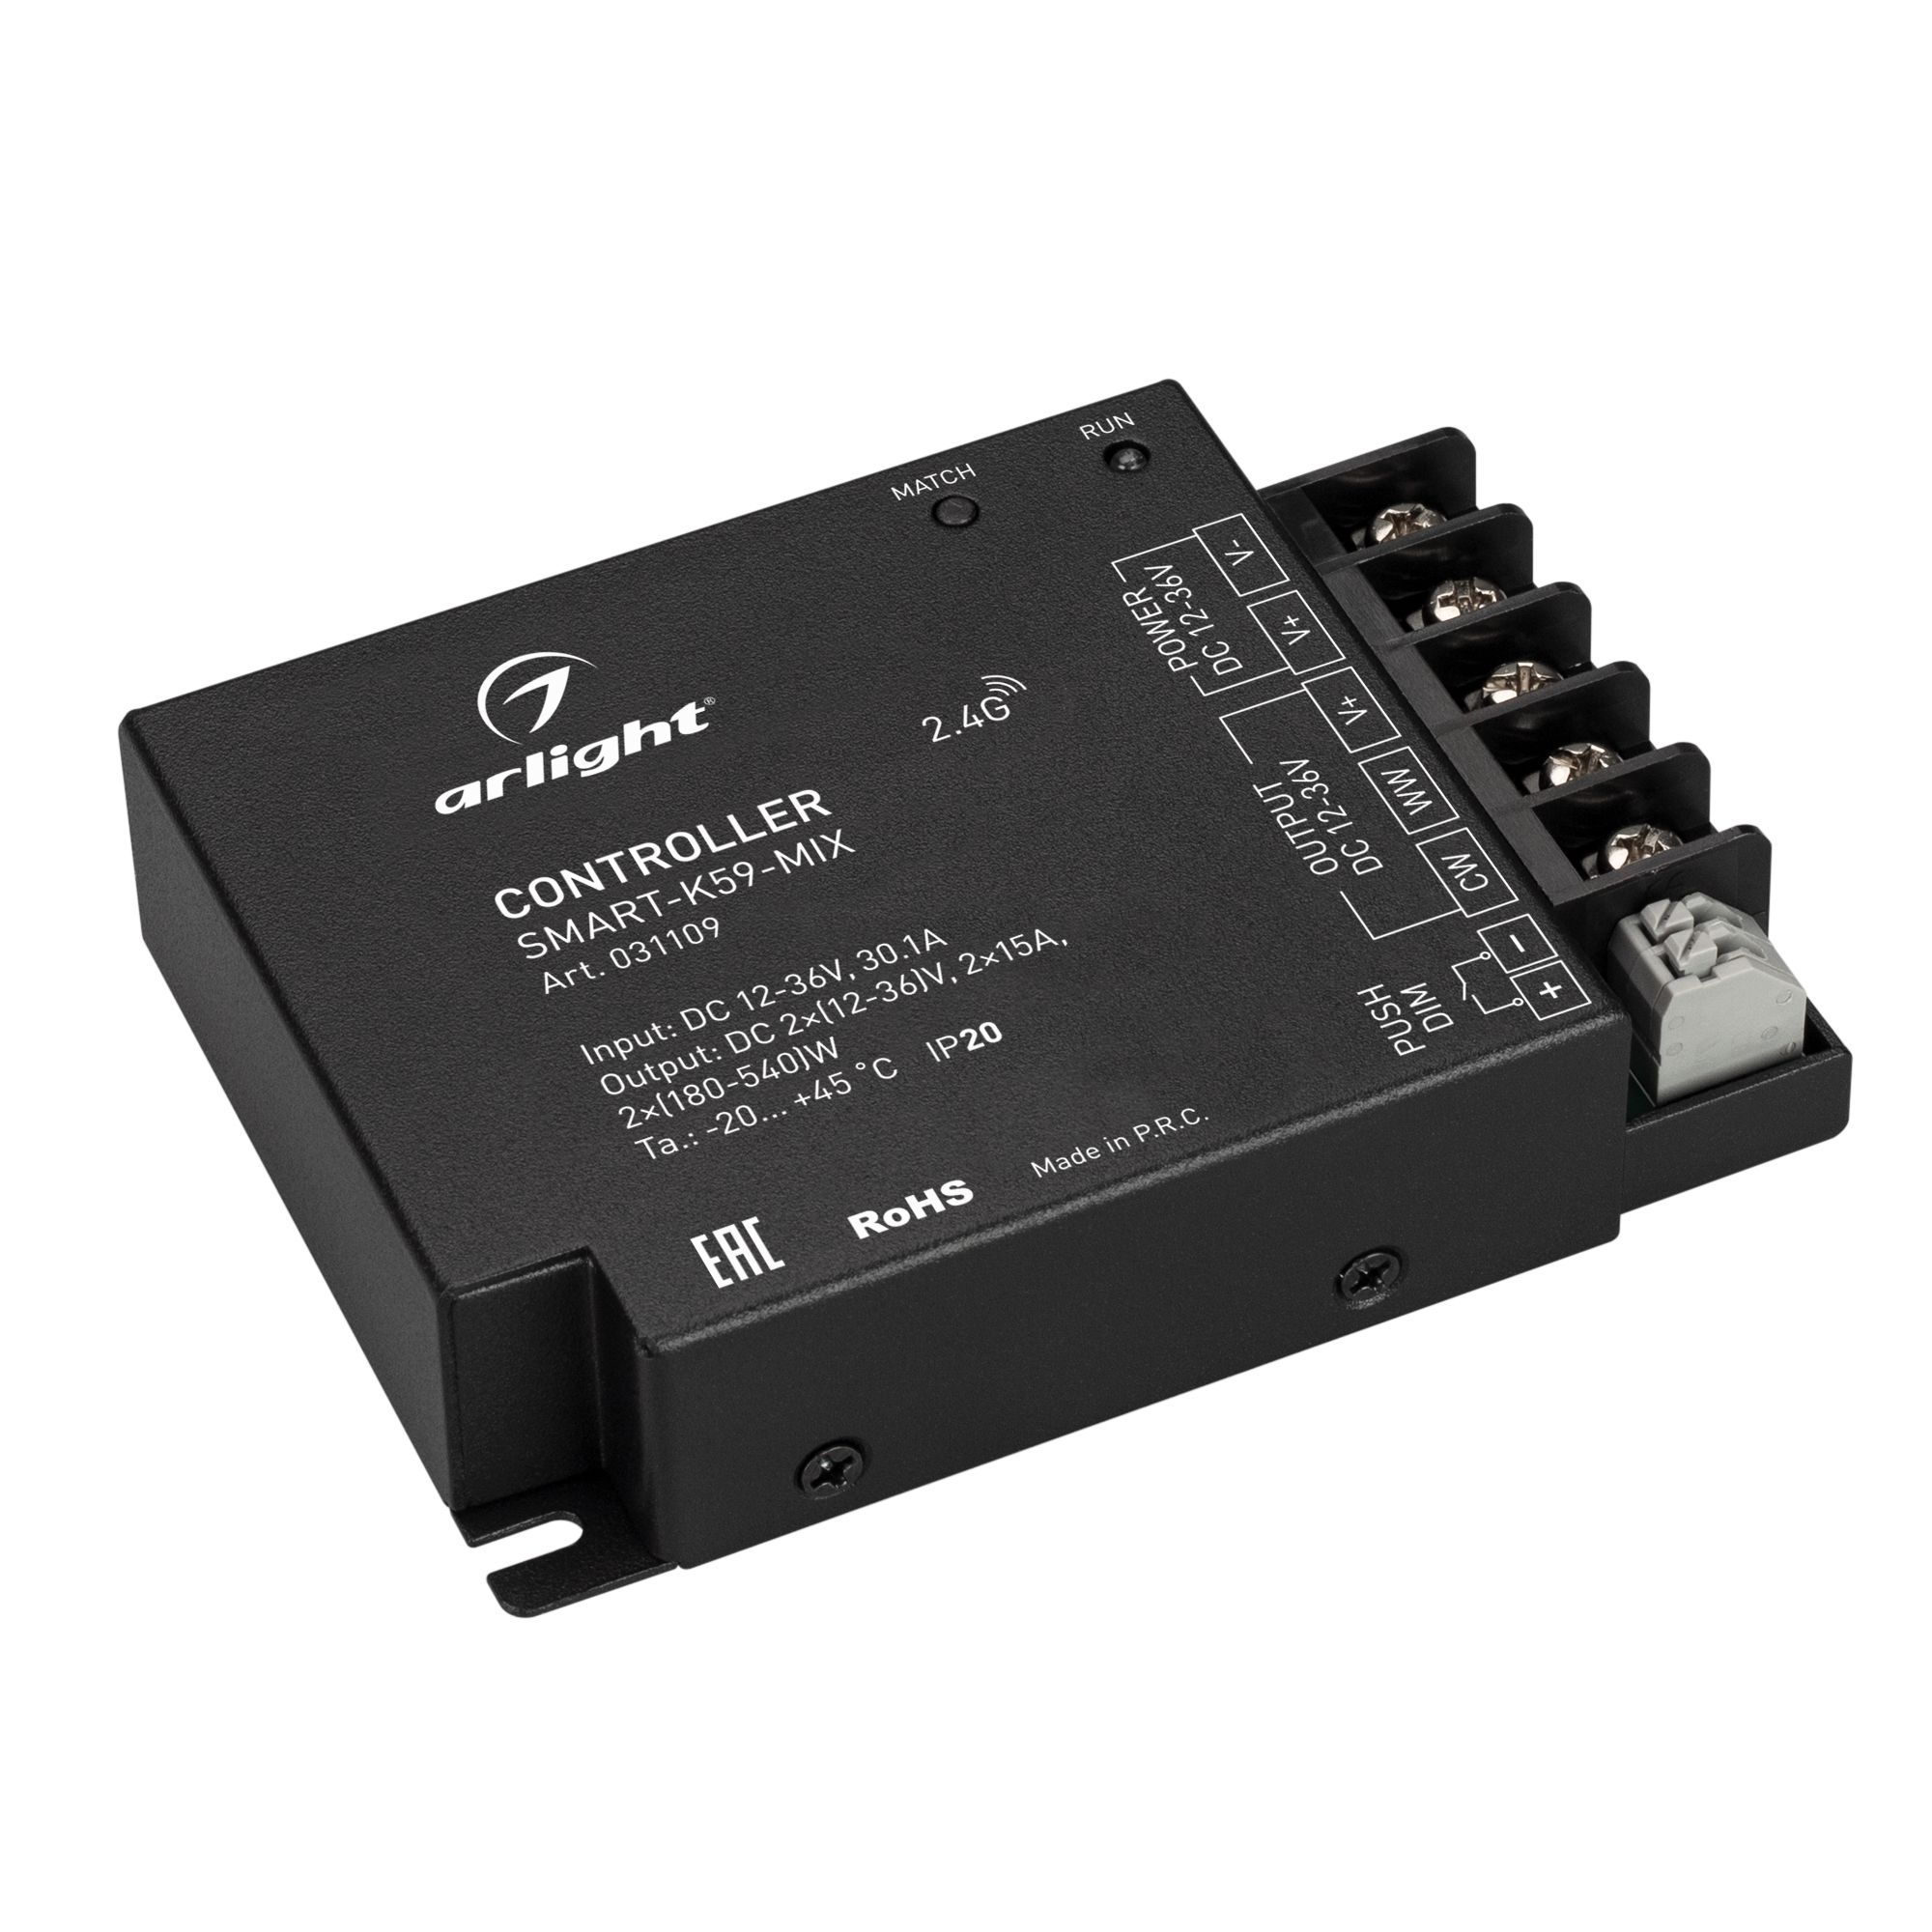 Контроллер SMART-K59-MIX (12-36V, 2x15A, 2.4G) (Arlight, IP20 Металл, 5 лет) контроллер для ленты m spi f12wh m spi f12wh